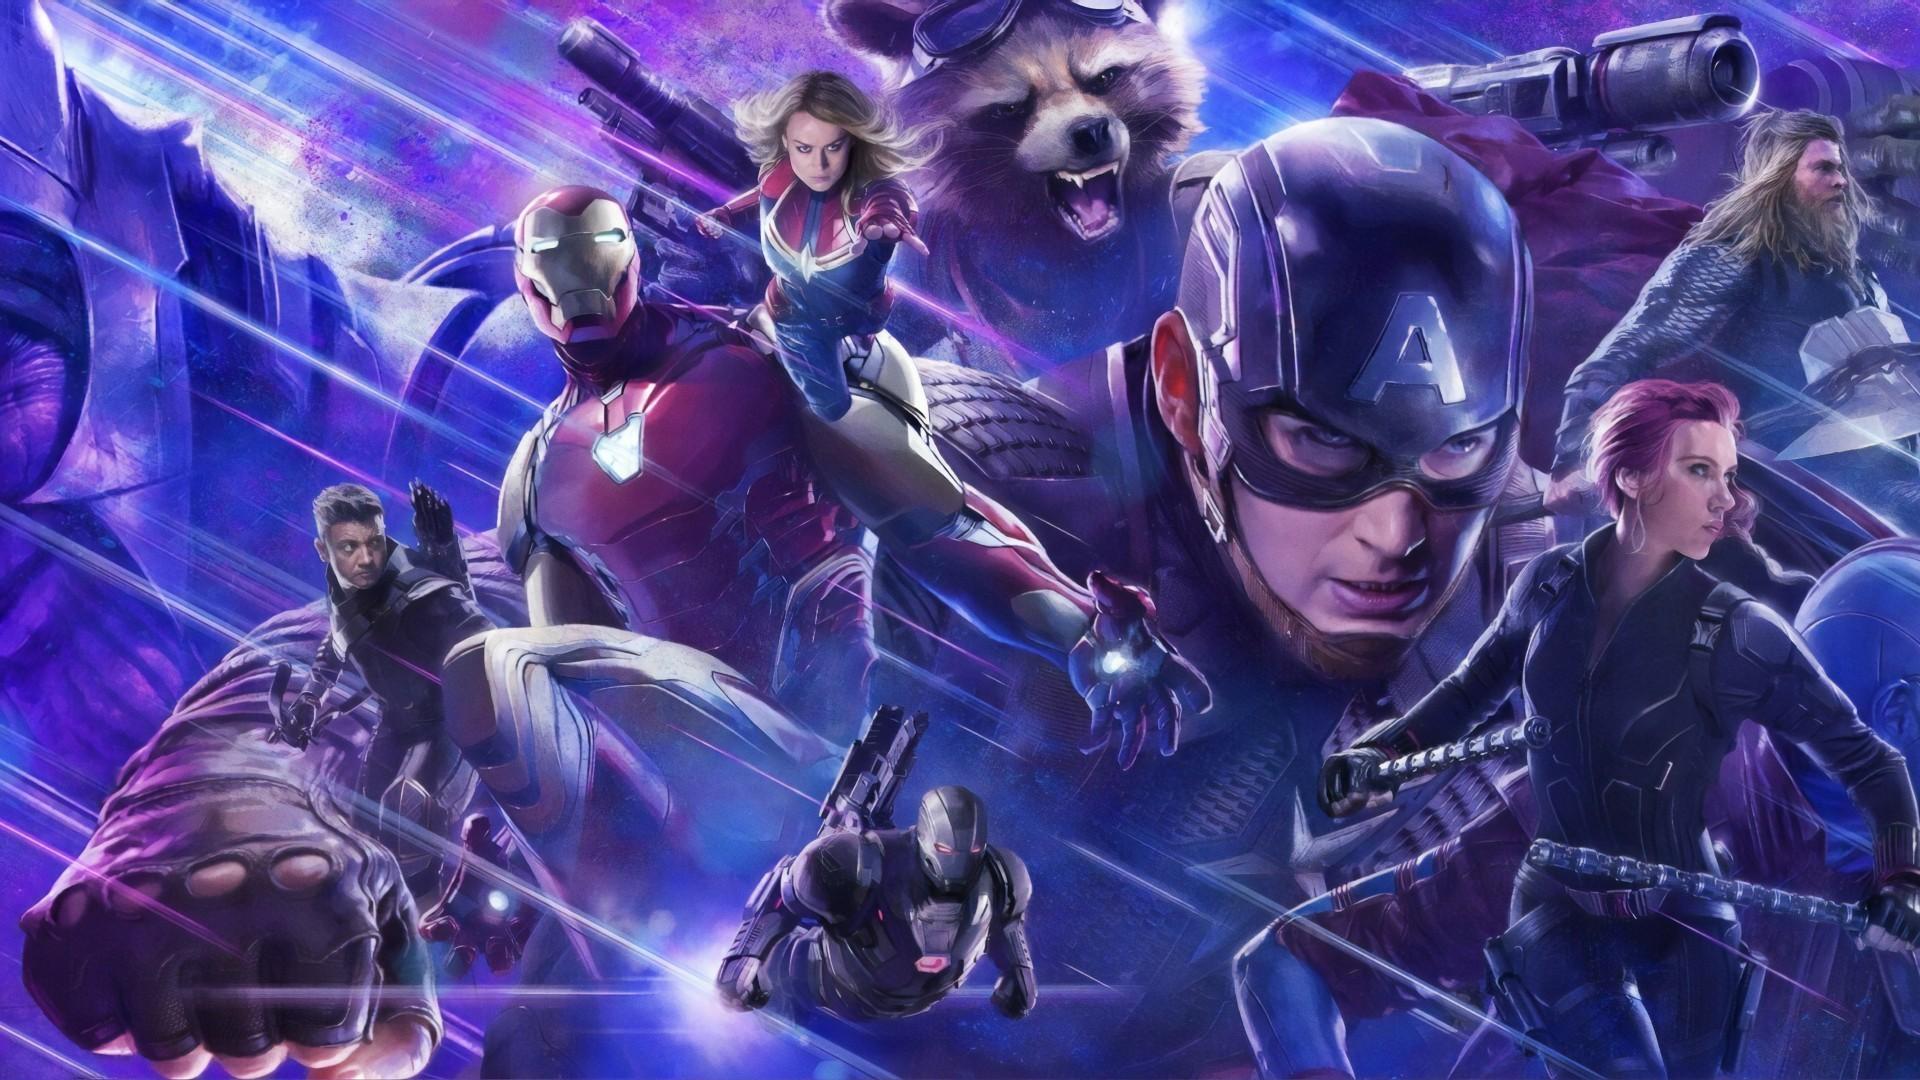 Download 1920x1080 Avengers: Endgame, Captain Marvel, Black